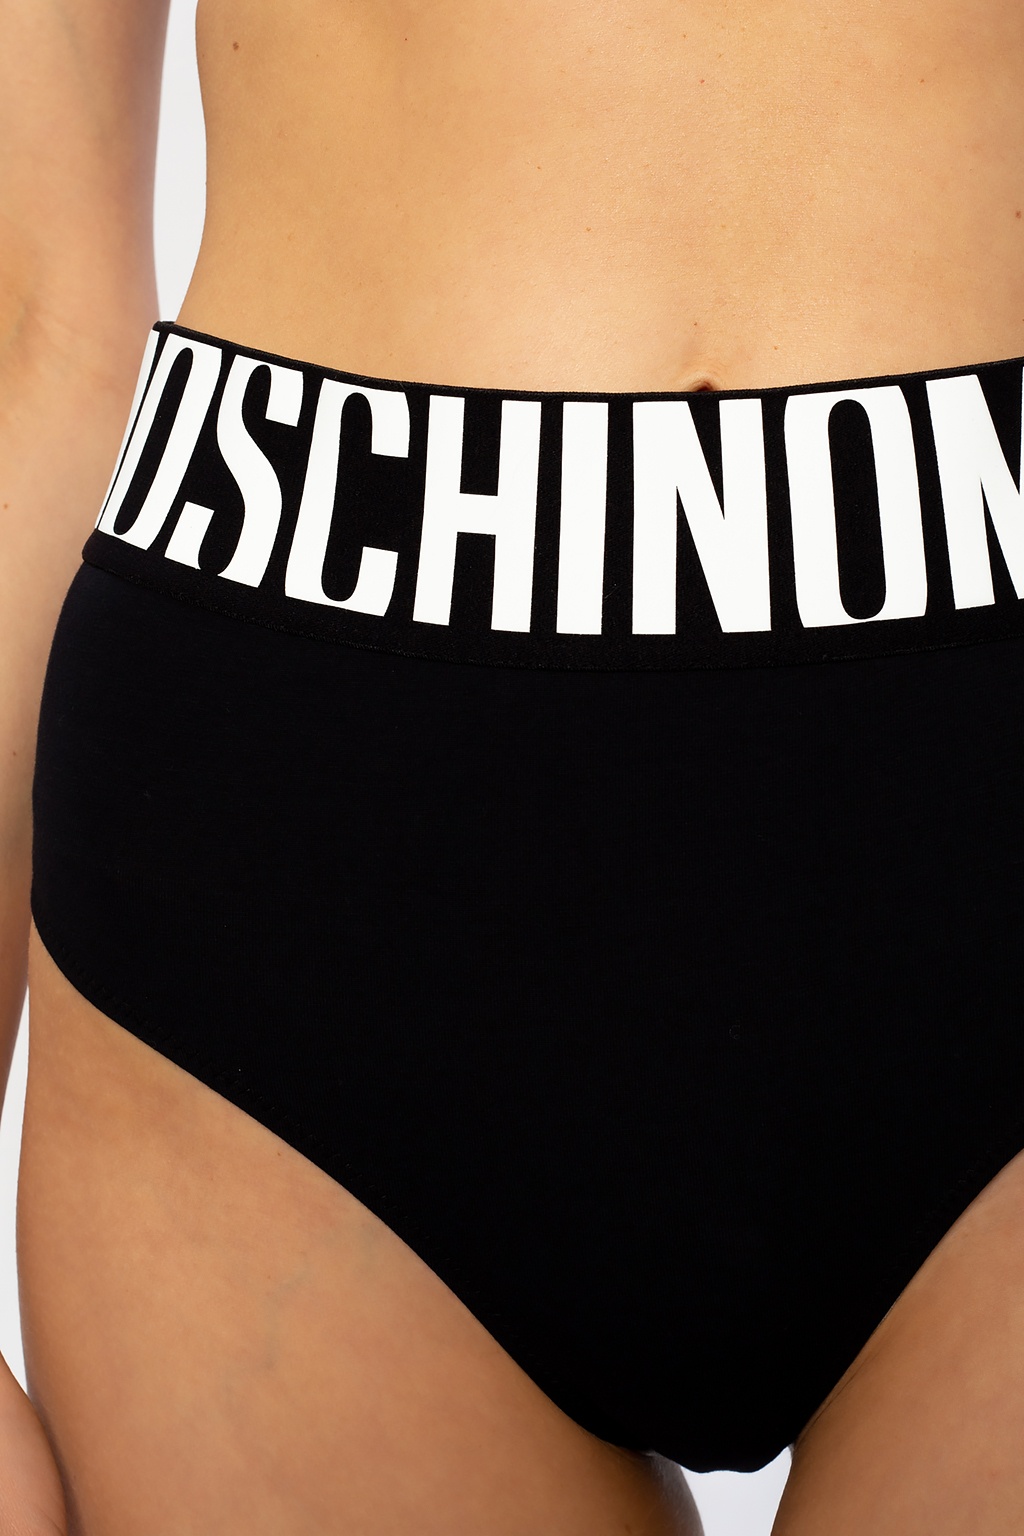 moschino womens underwear